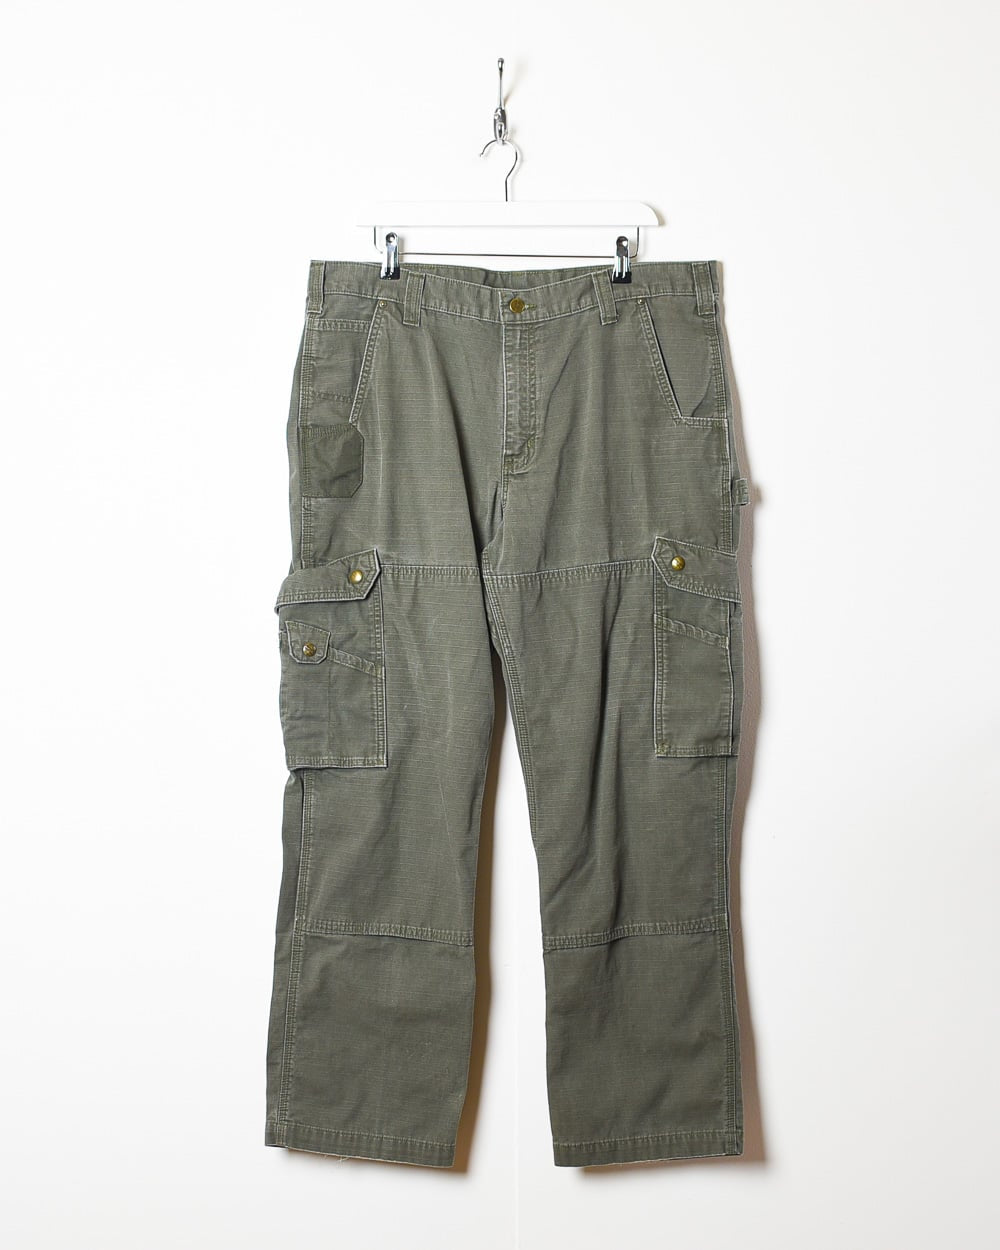 Vintage Vintage Cargo Pants Carhartt Streetwear